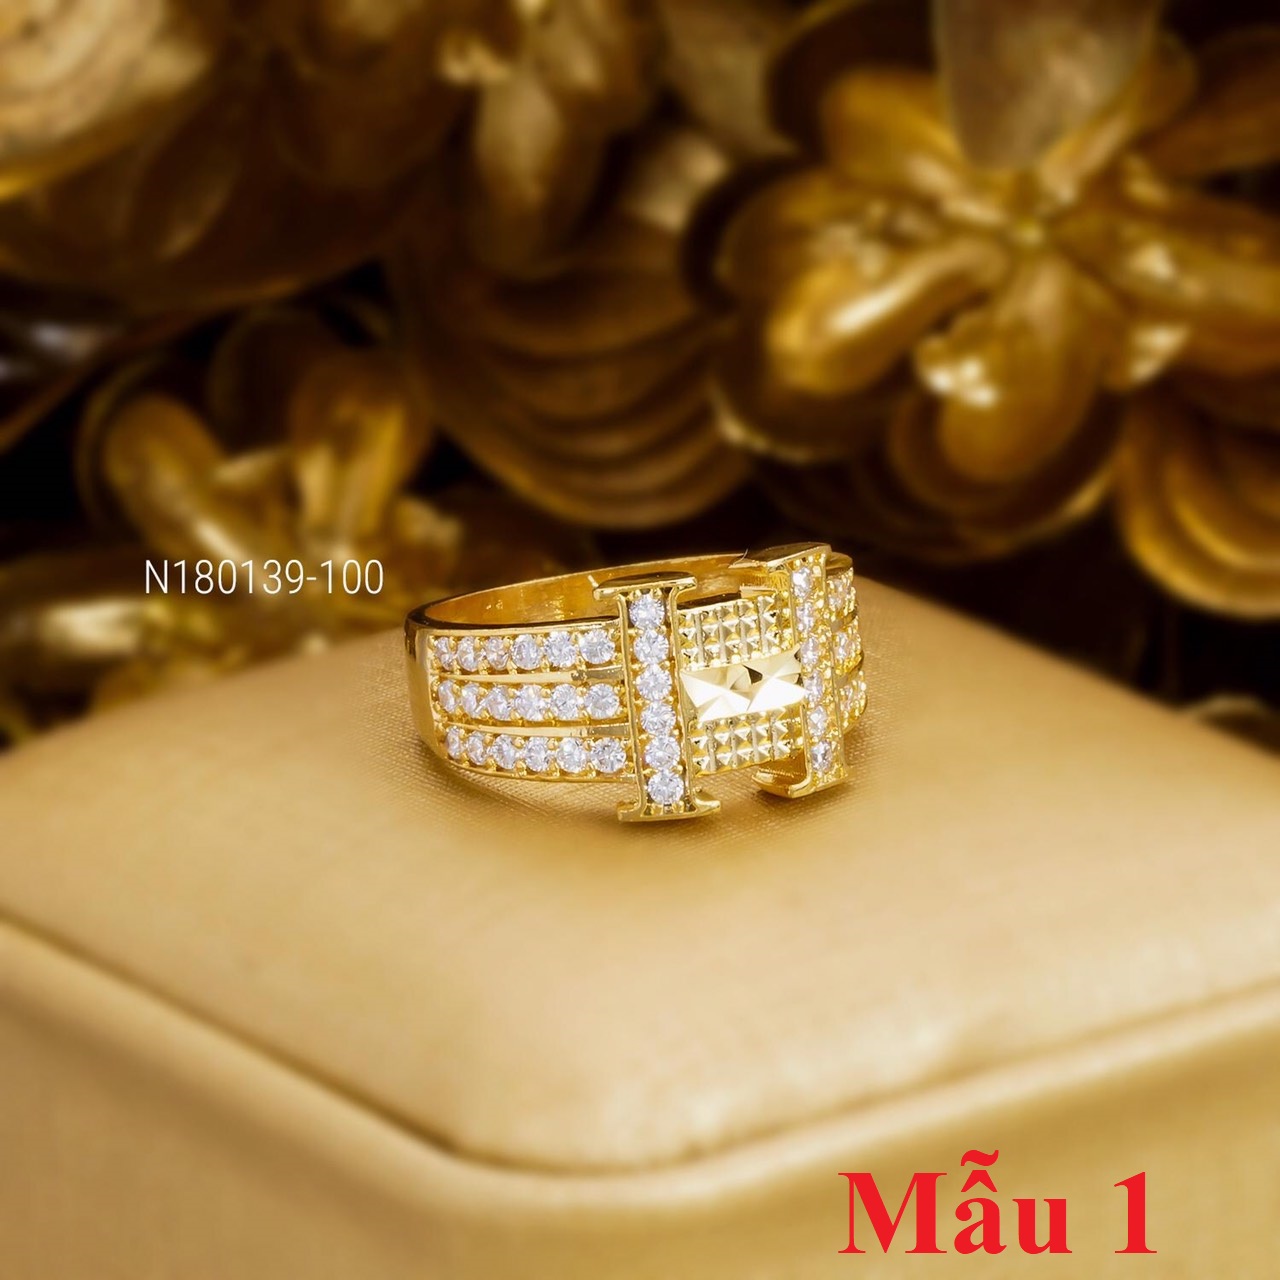 Nhẫn Nữ Đẹp Vàng 18k - N31072010 - Givishop - Dùng Đi Tiệc Tôn Lên Vẻ Đẹp Của Phụ Nữ , kiểu nhẫn đẹp, nhẫn đẹp cho nữ, mẫu nhẫn đẹp 2020, những mẫu nhẫn đẹp, mẫu nhẫn đẹp cho nữ